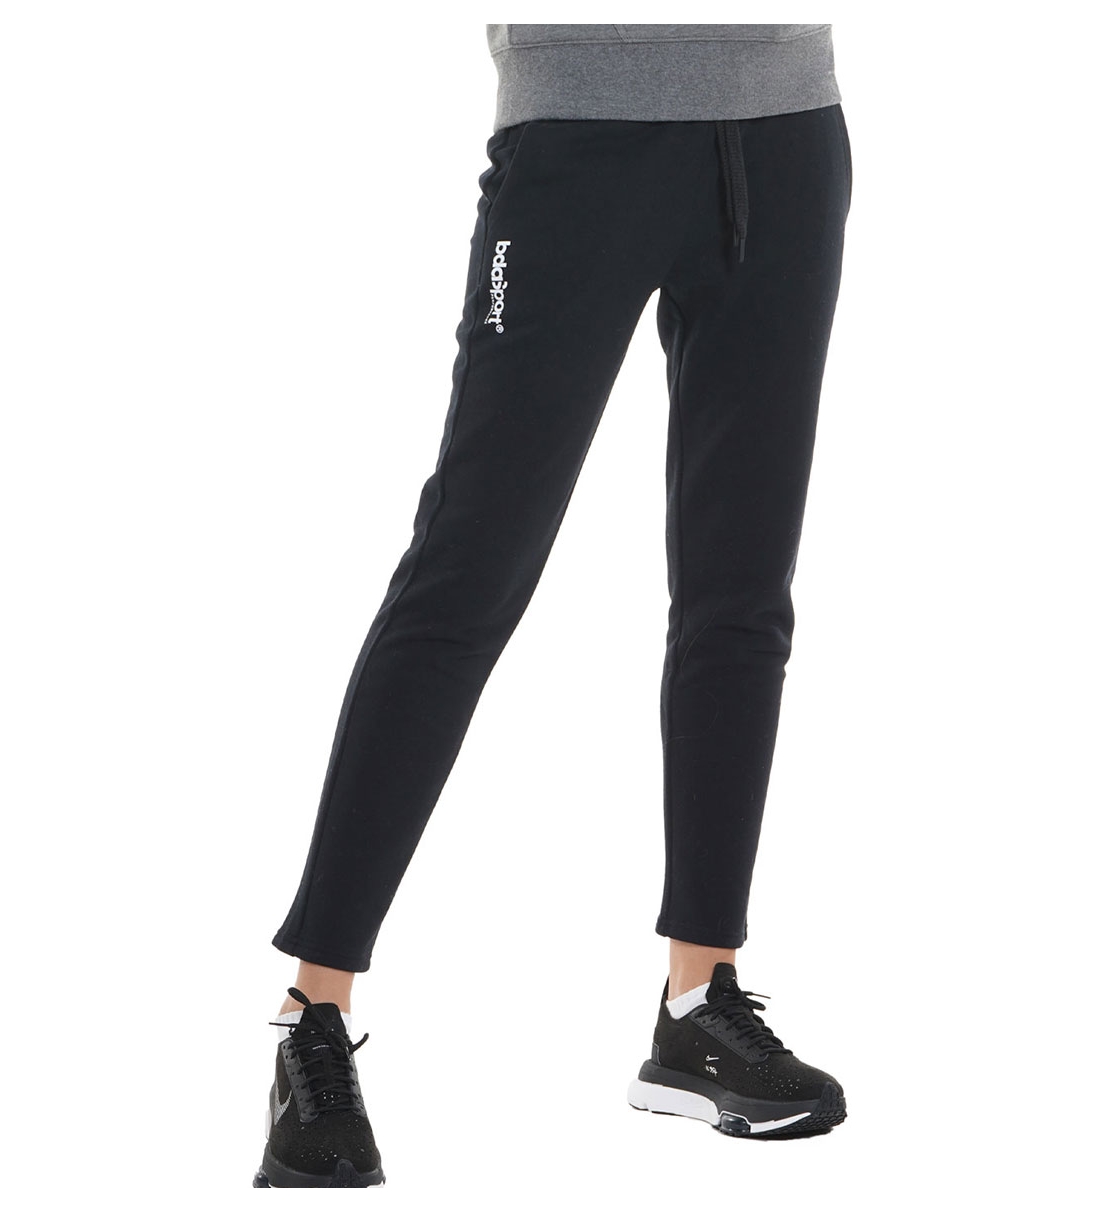 Body Action Fw21 Women'S Slim Fit Fleece Pants